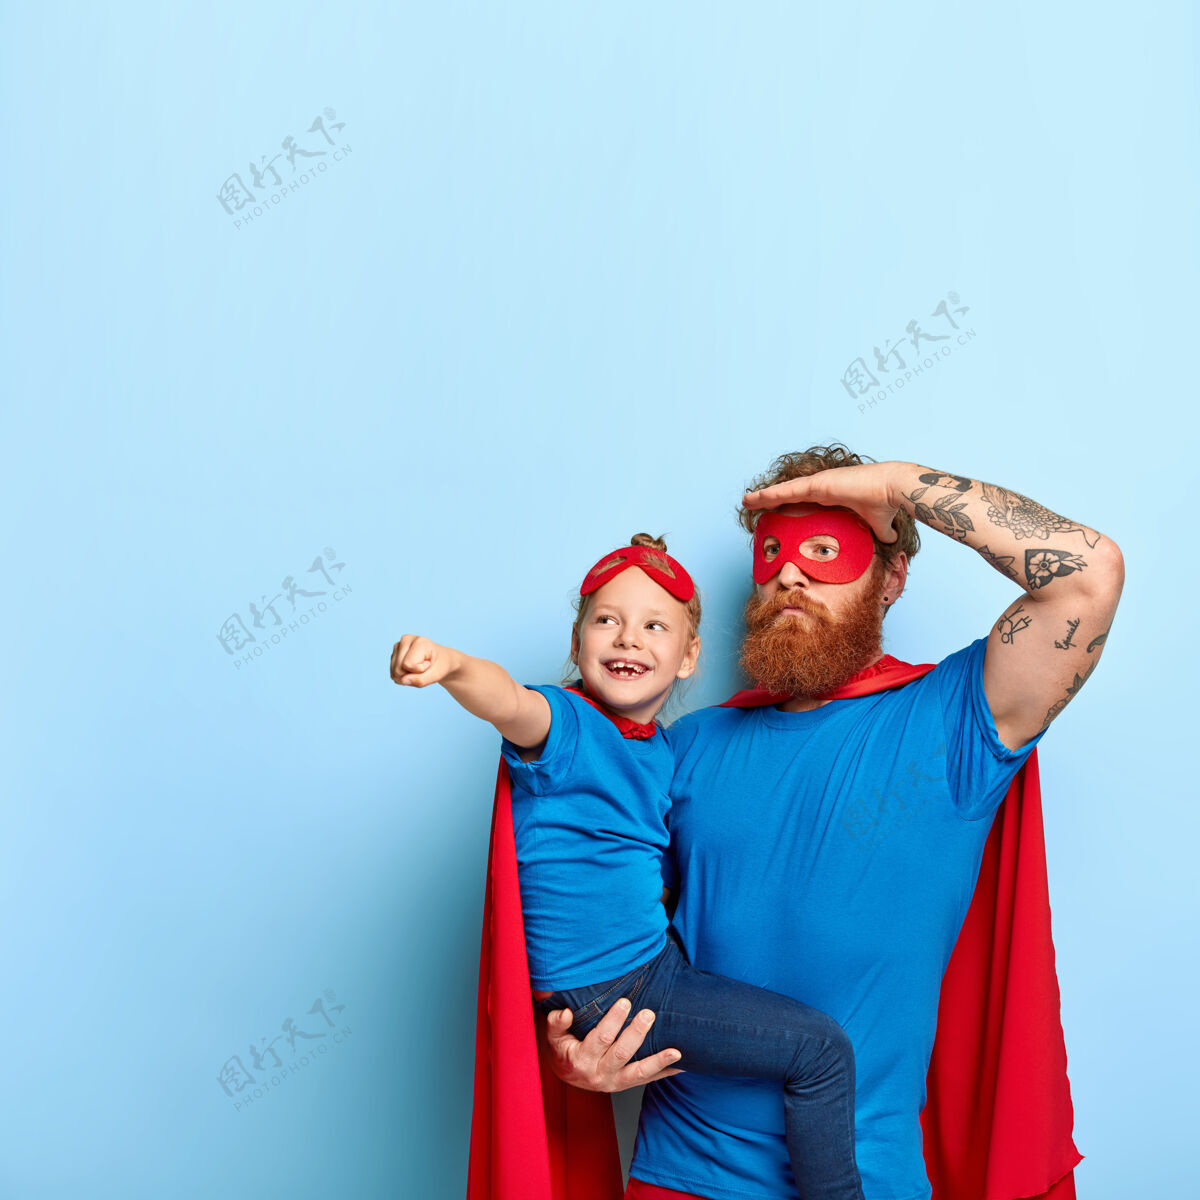 垂直照片中父女俩一起玩耍 穿上超级英雄的服装在一起女儿父亲